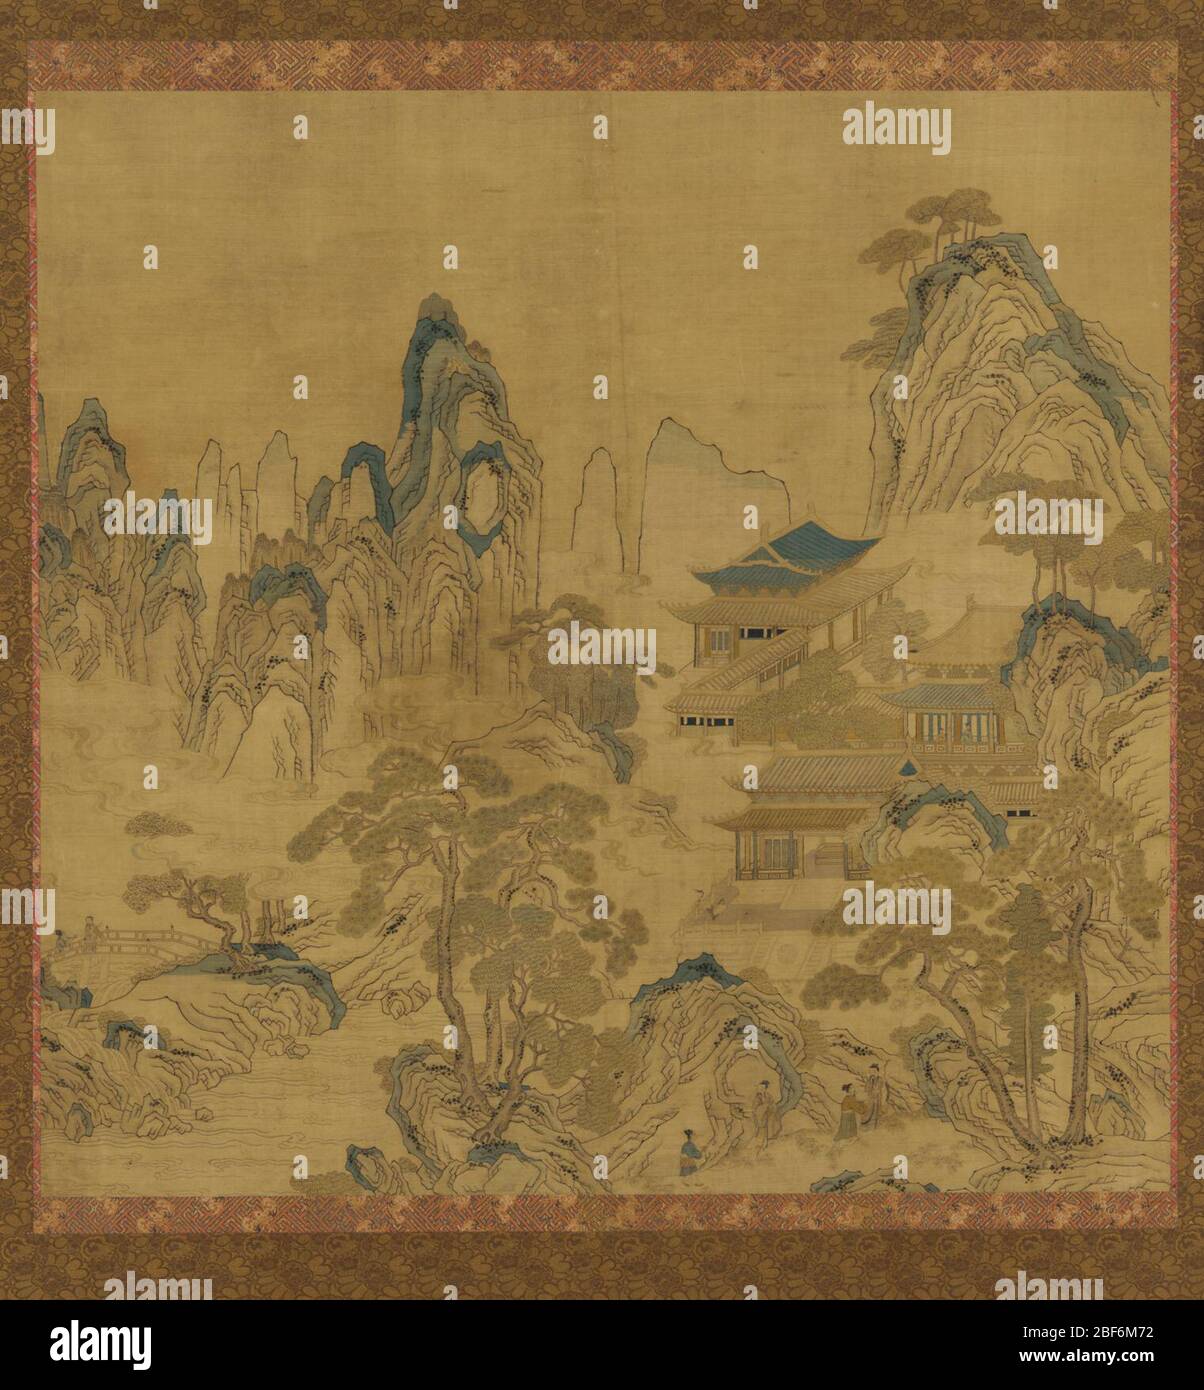 ; Chine ; 1368-1644 ; couleur sur panneau en soie ; H x l : 116,7 x 119,9 cm (45 15/16 x 47 3/16 po) ; Don de Charles Lang freer Banque D'Images